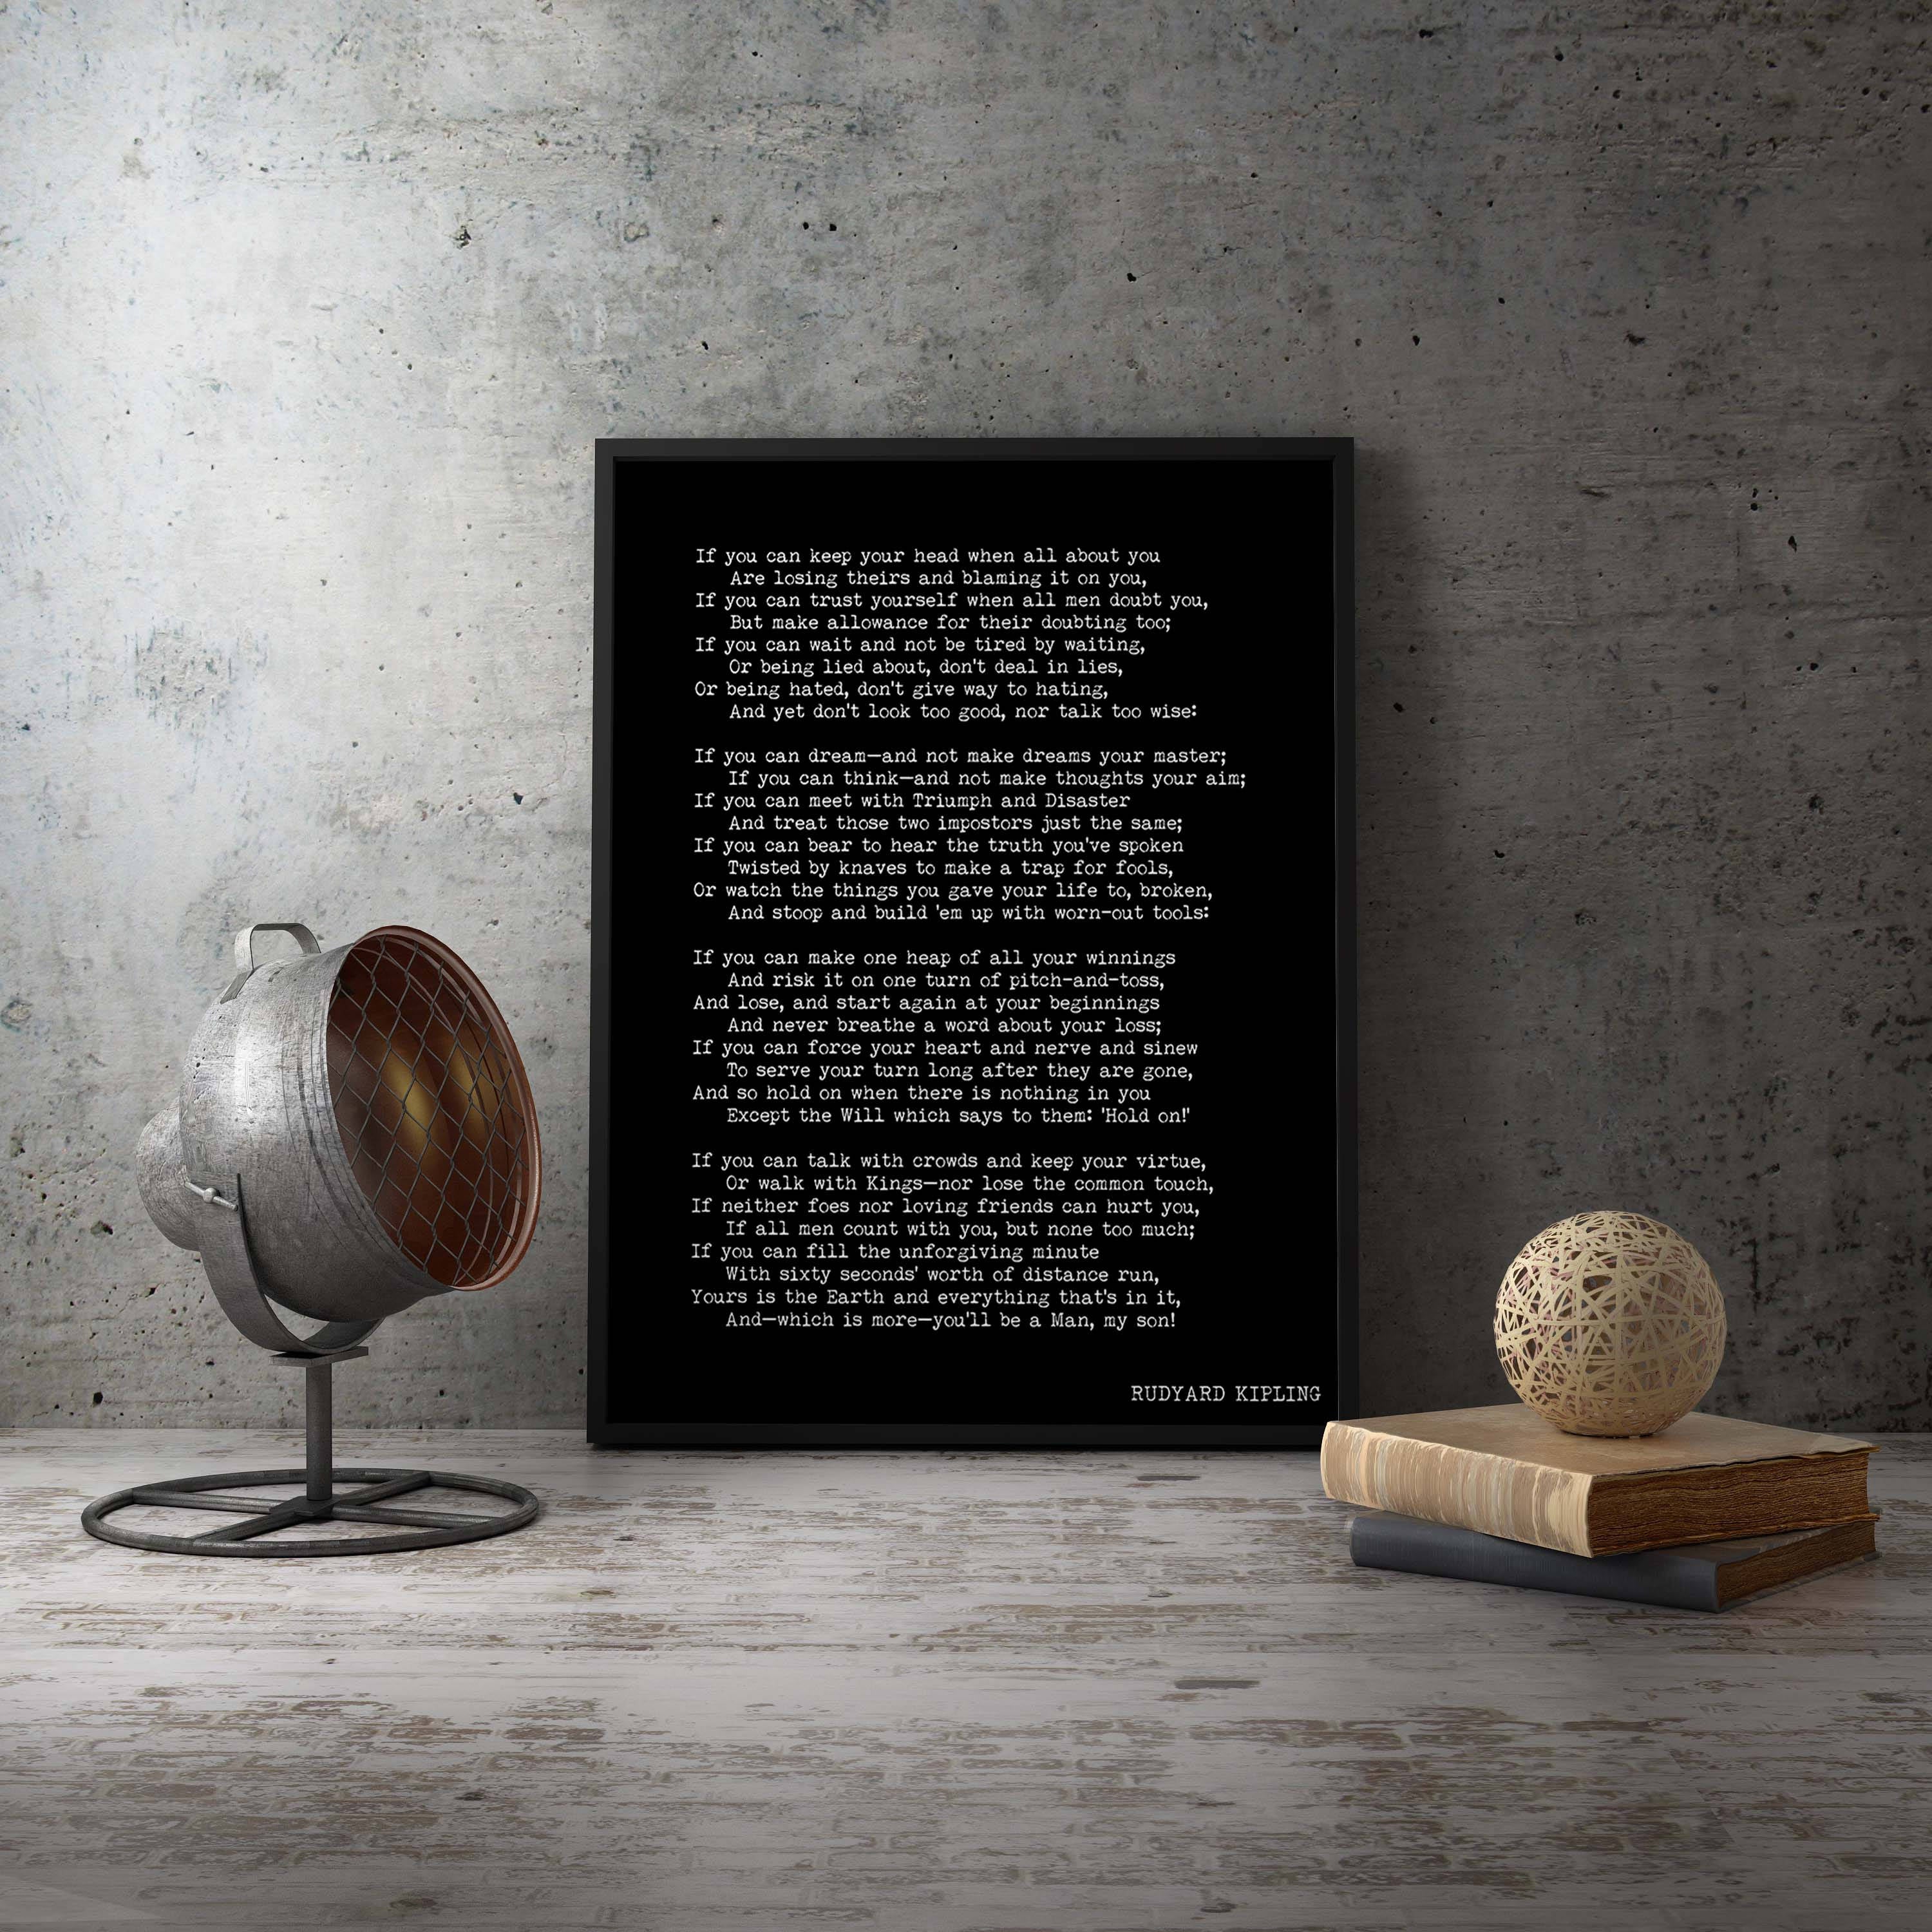 Framed print Rudyard Kipling Poem, If Poetry Art Print